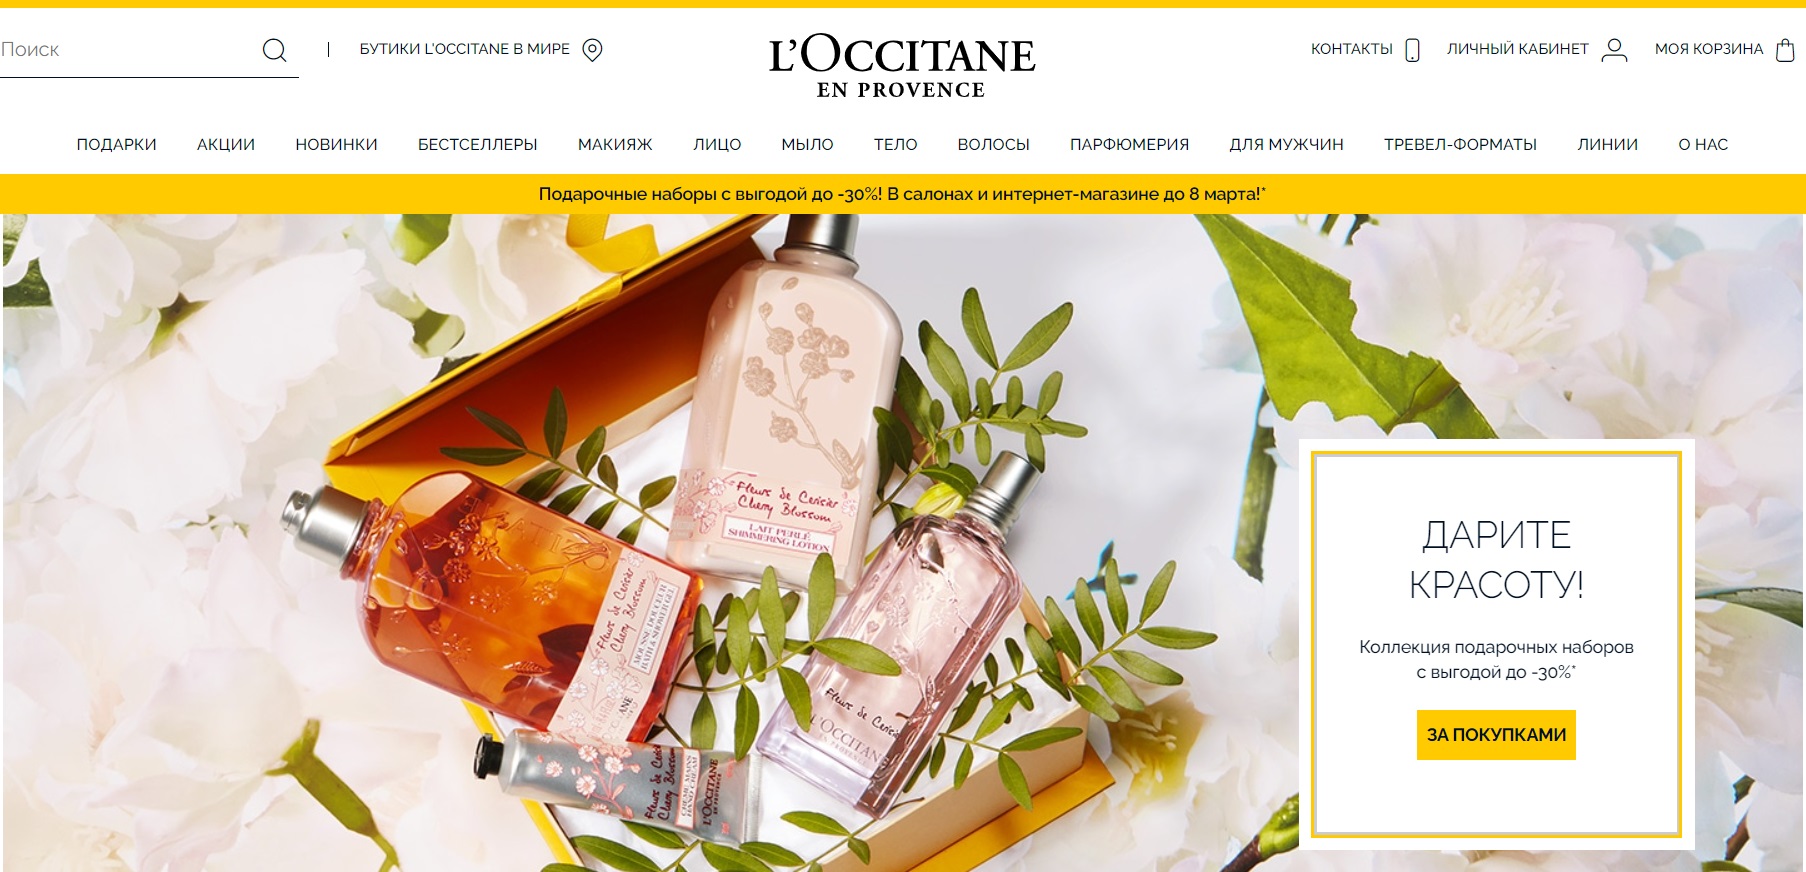 L’Occitane официальный сайт интернет-магазина